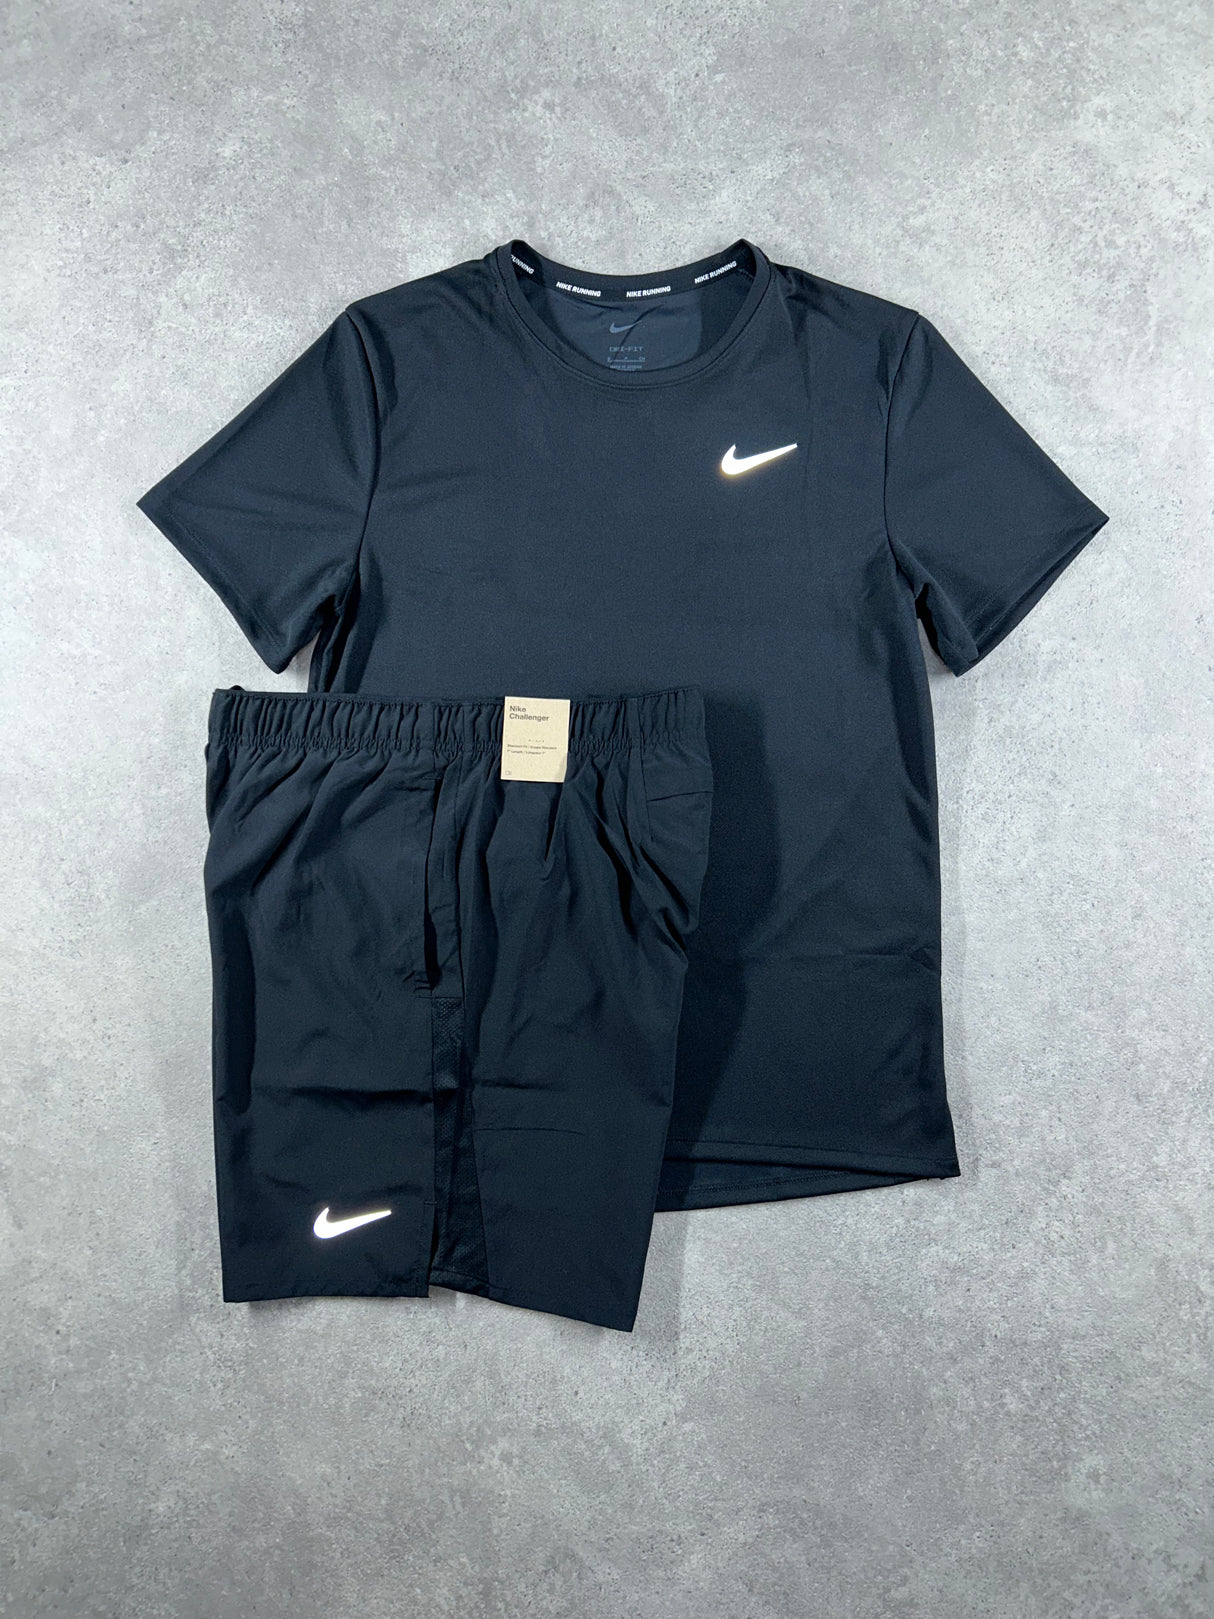 Nike - Miler Set - Black